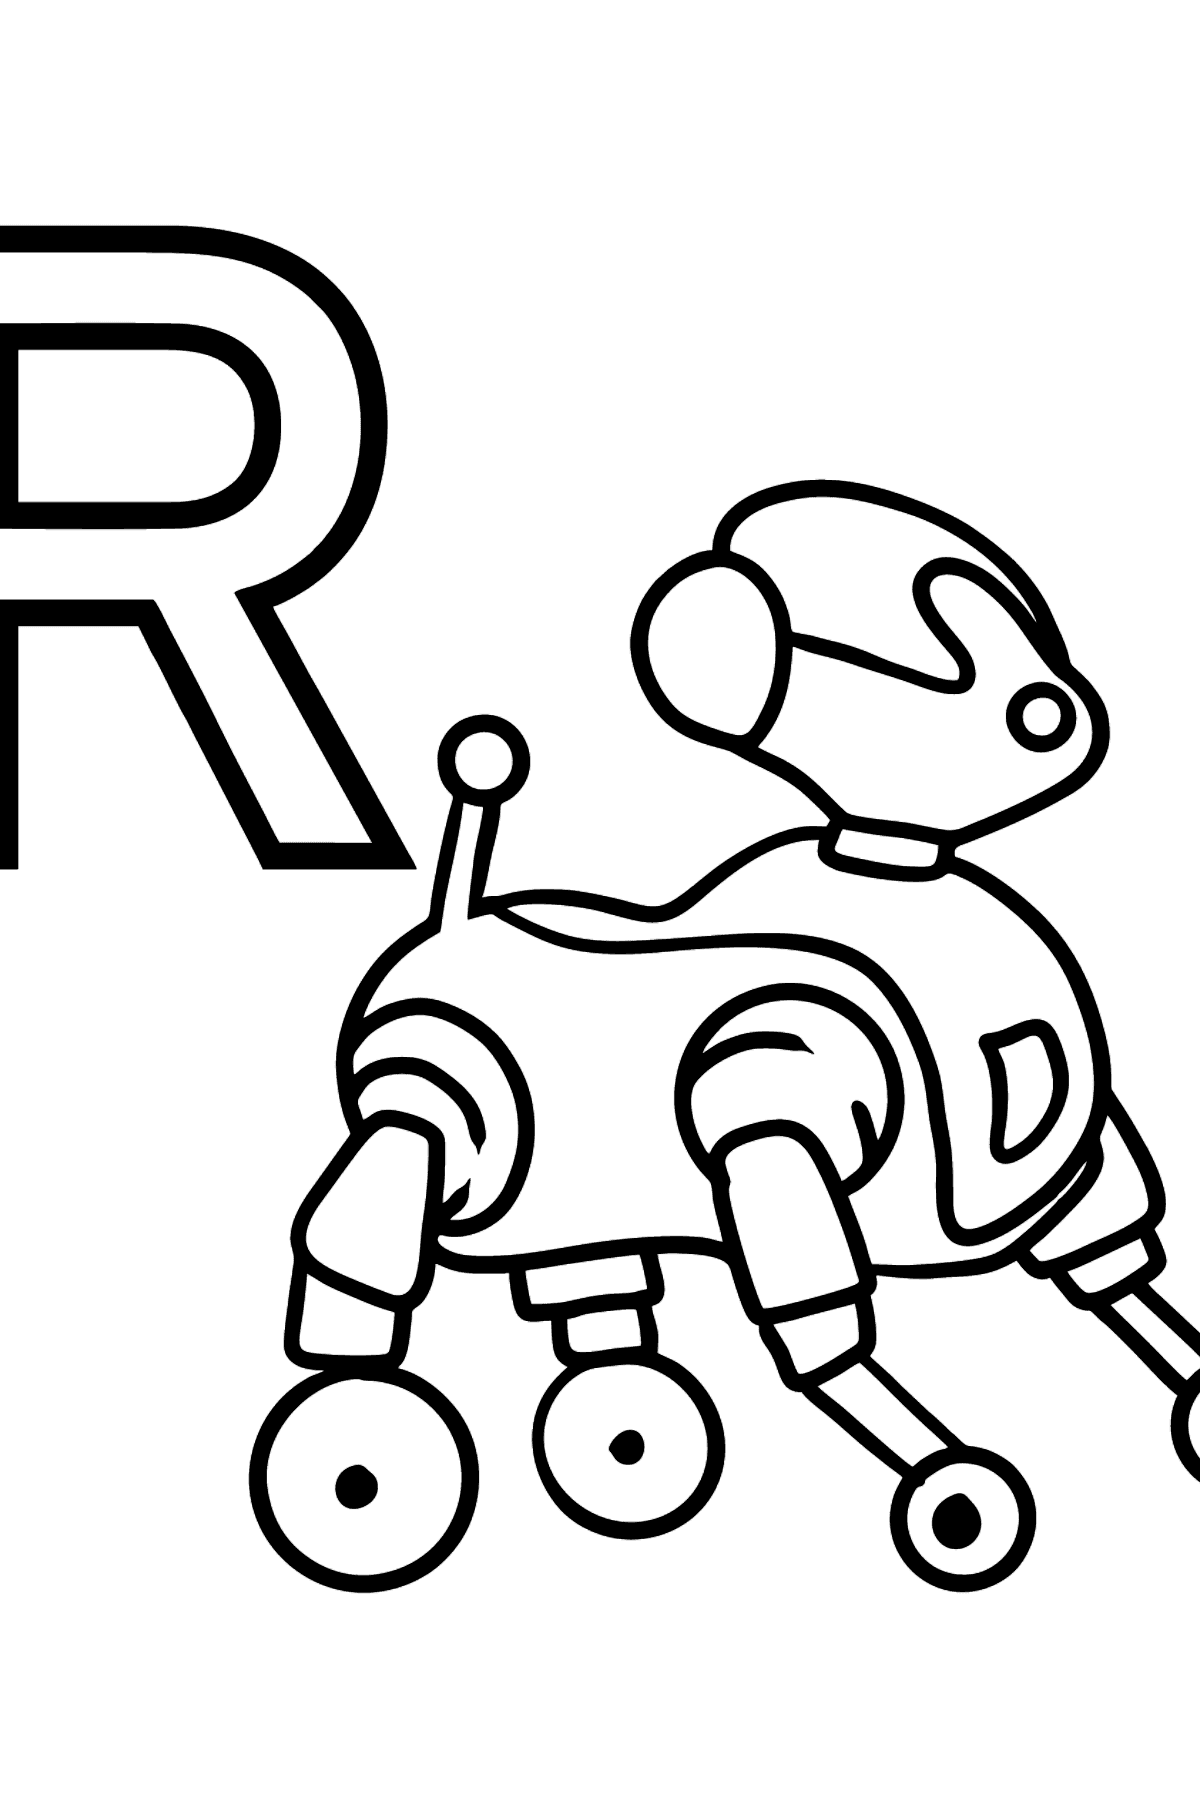 Coloriage - Lettre espagnole R - ROBOT - Coloriages pour les Enfants